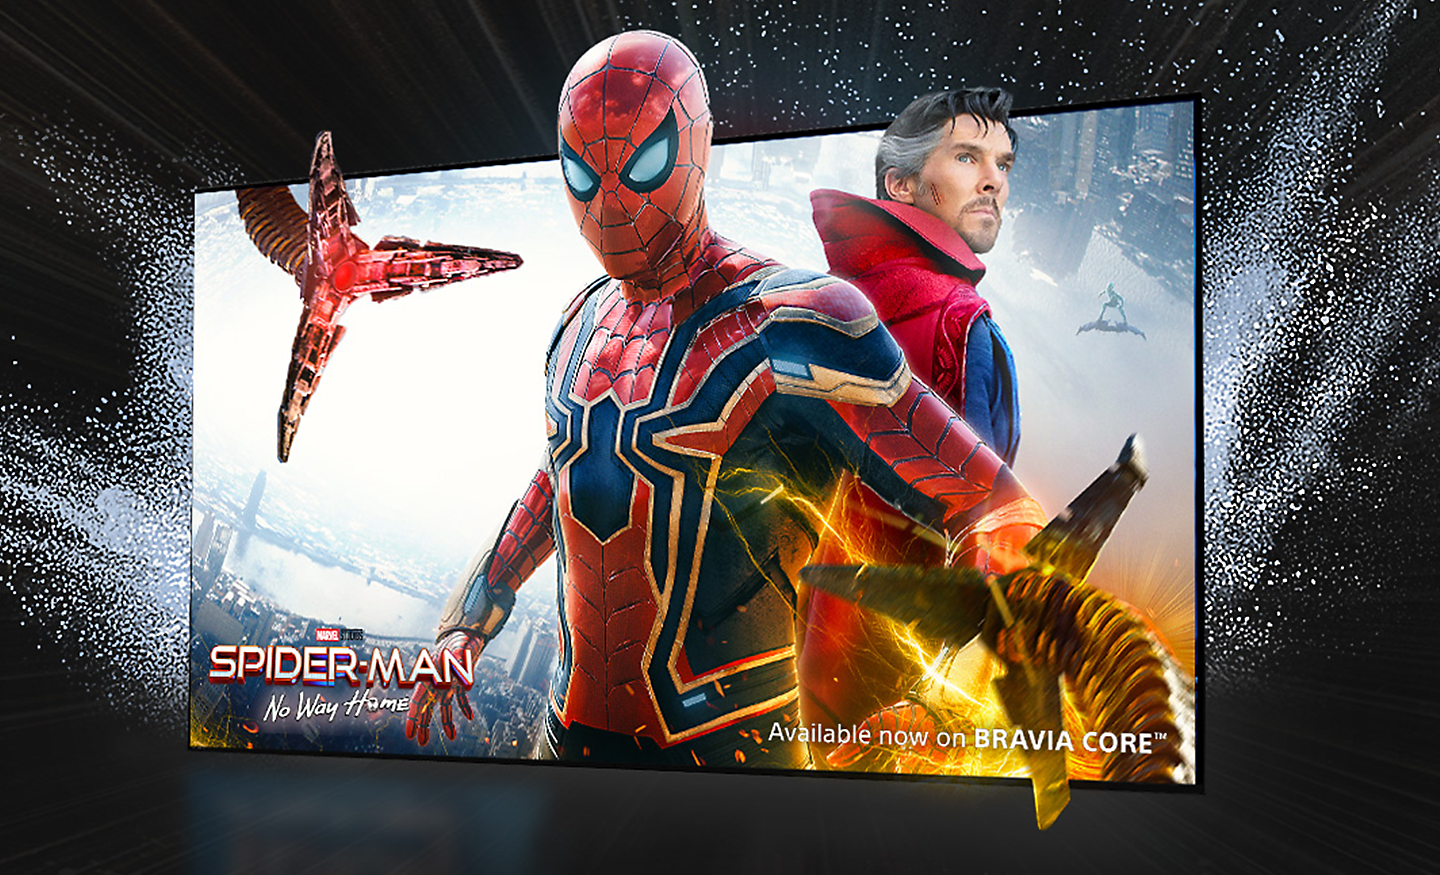 Tv-scherm met de film SPIDER-MAN: No Way Home, waarbij Spiderman uit het scherm komt